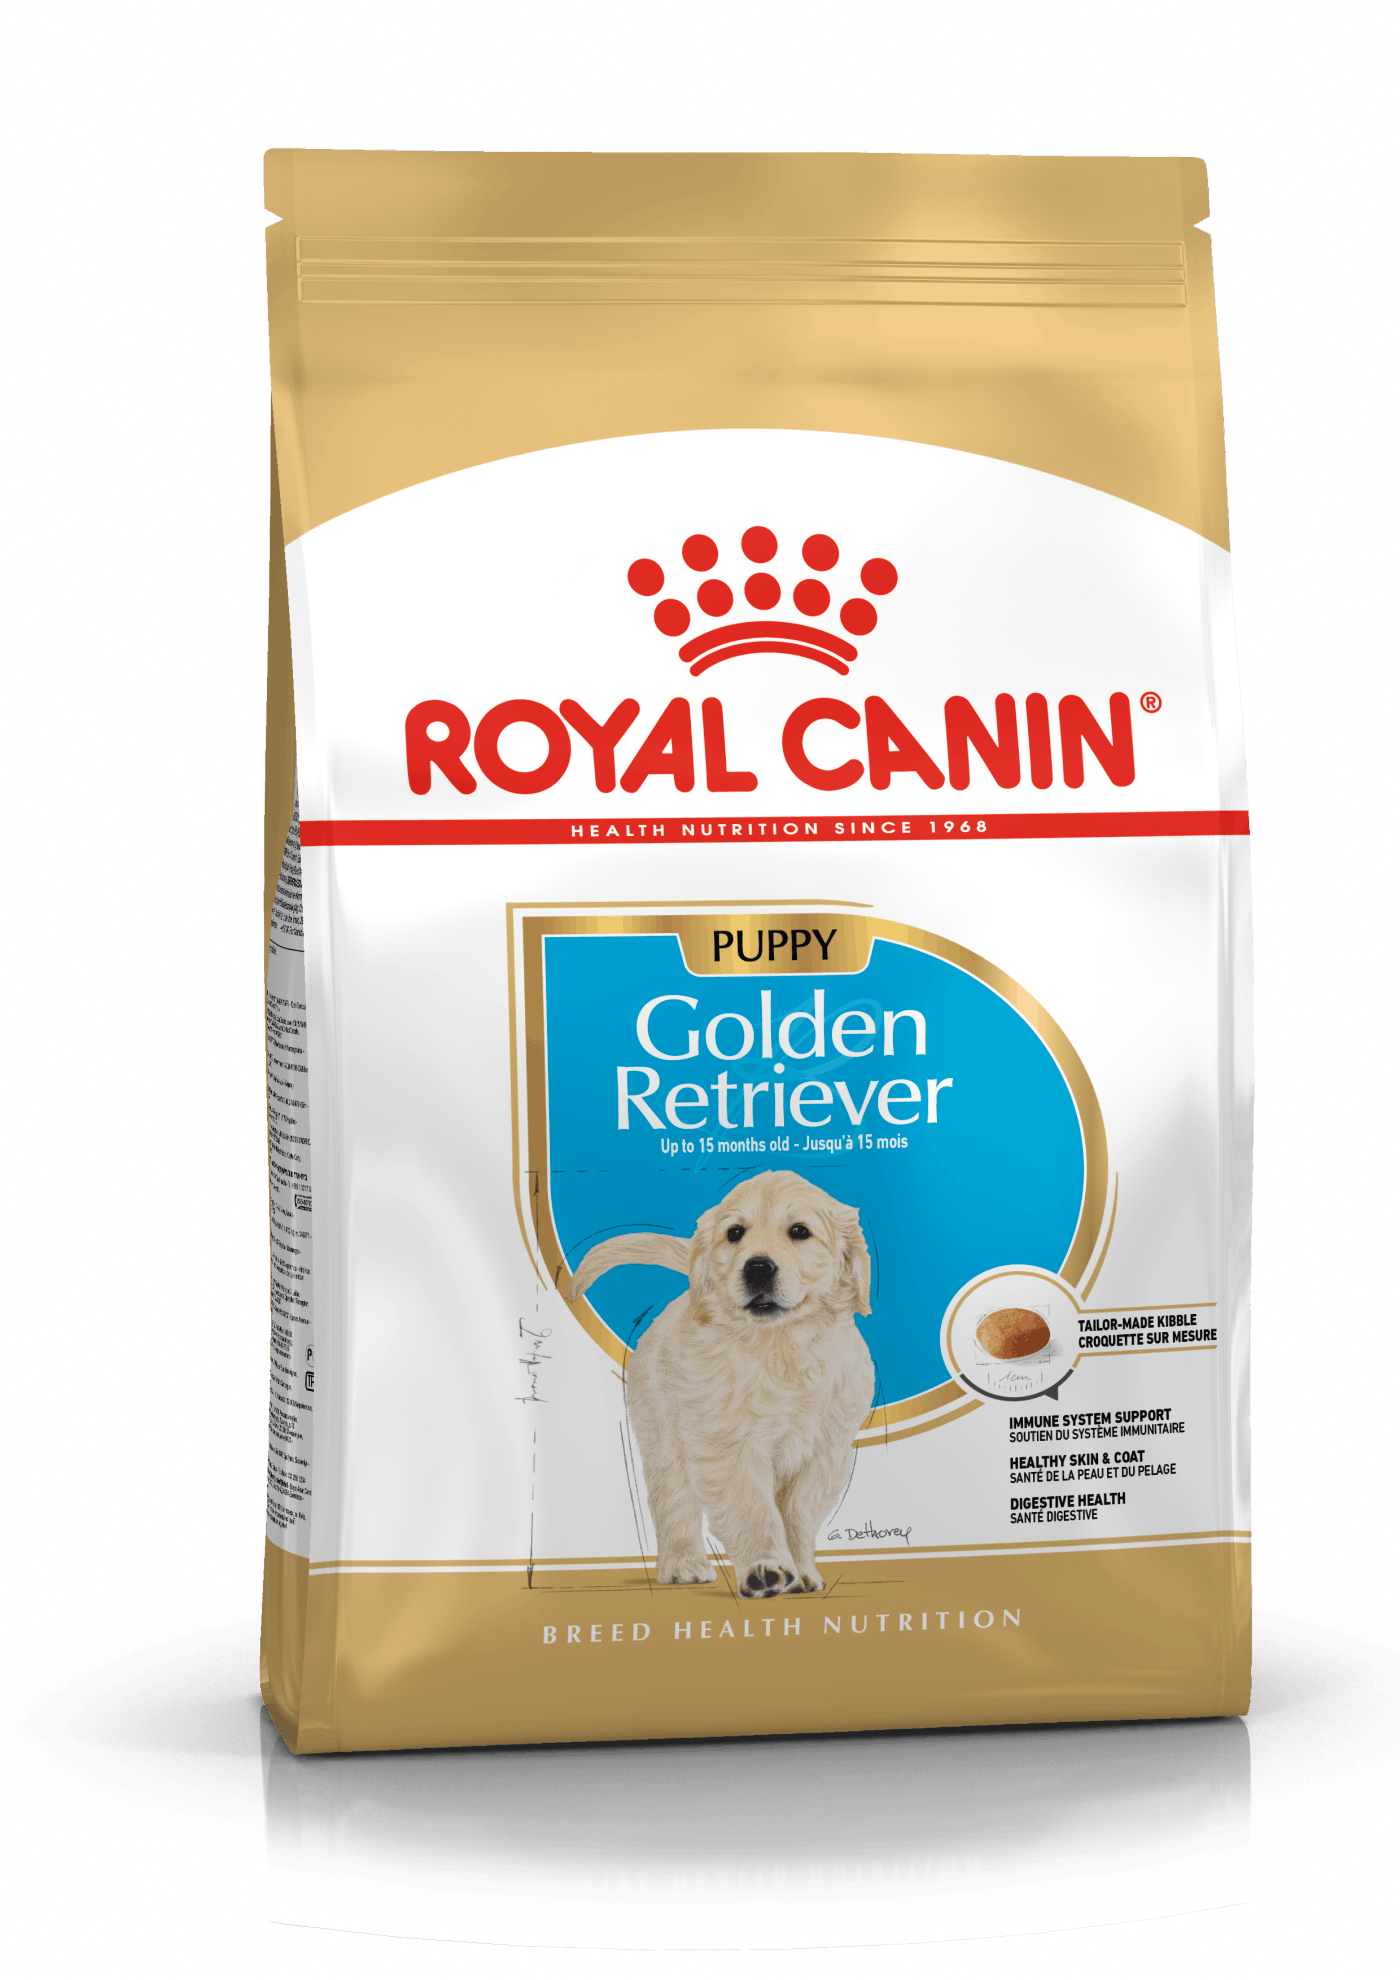 Royal Canin Golden Retriever Puppy - op til 15 måneder. 12kg